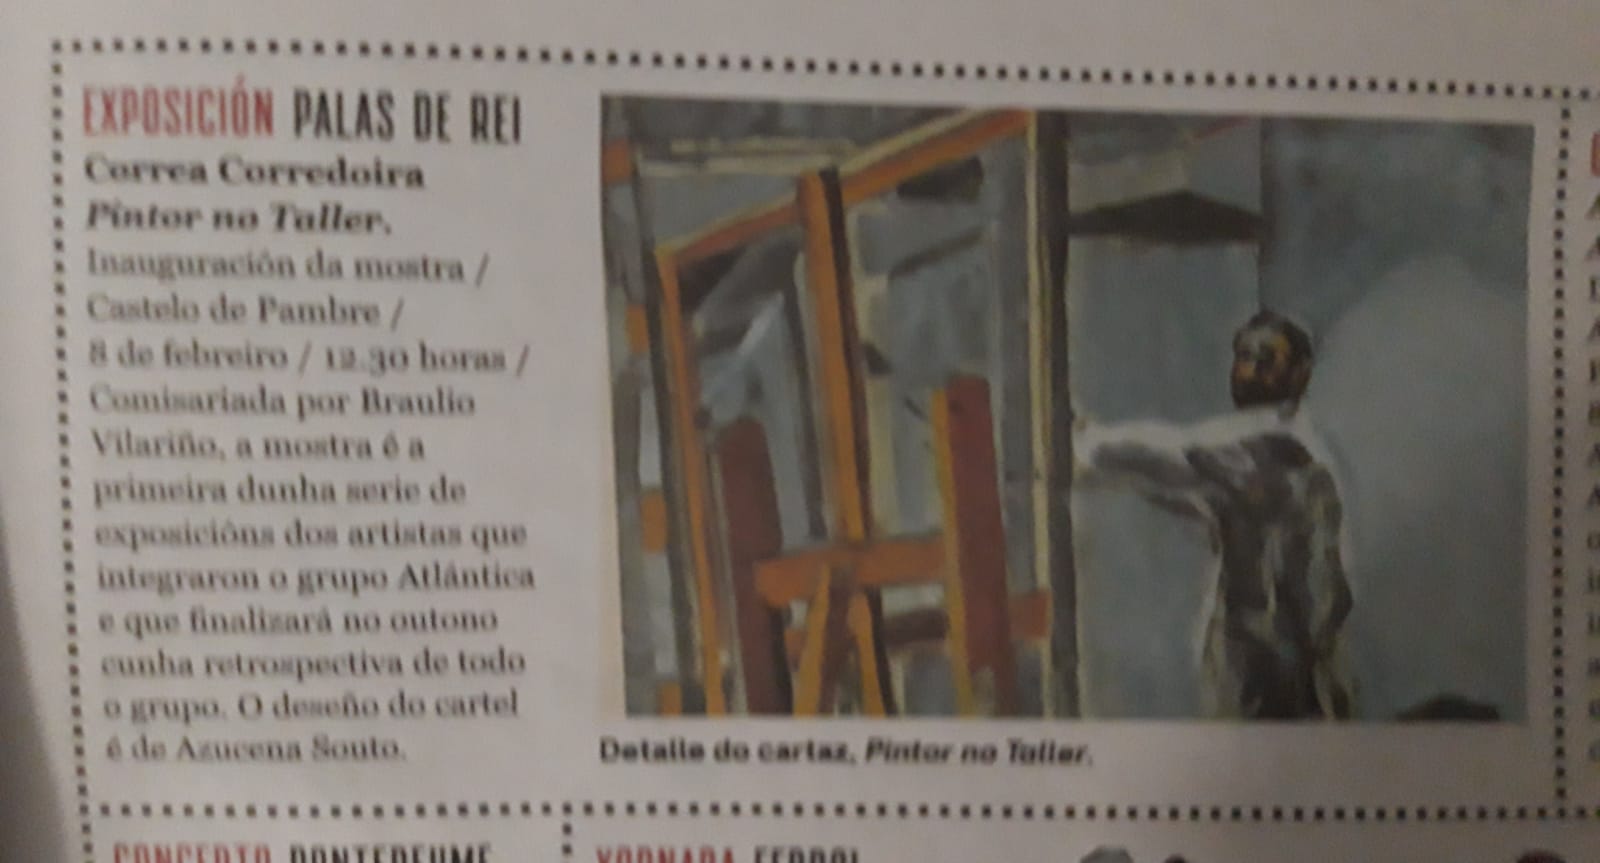 Exposición Correa Corredoira, Pintor no Taller, Nos Diario